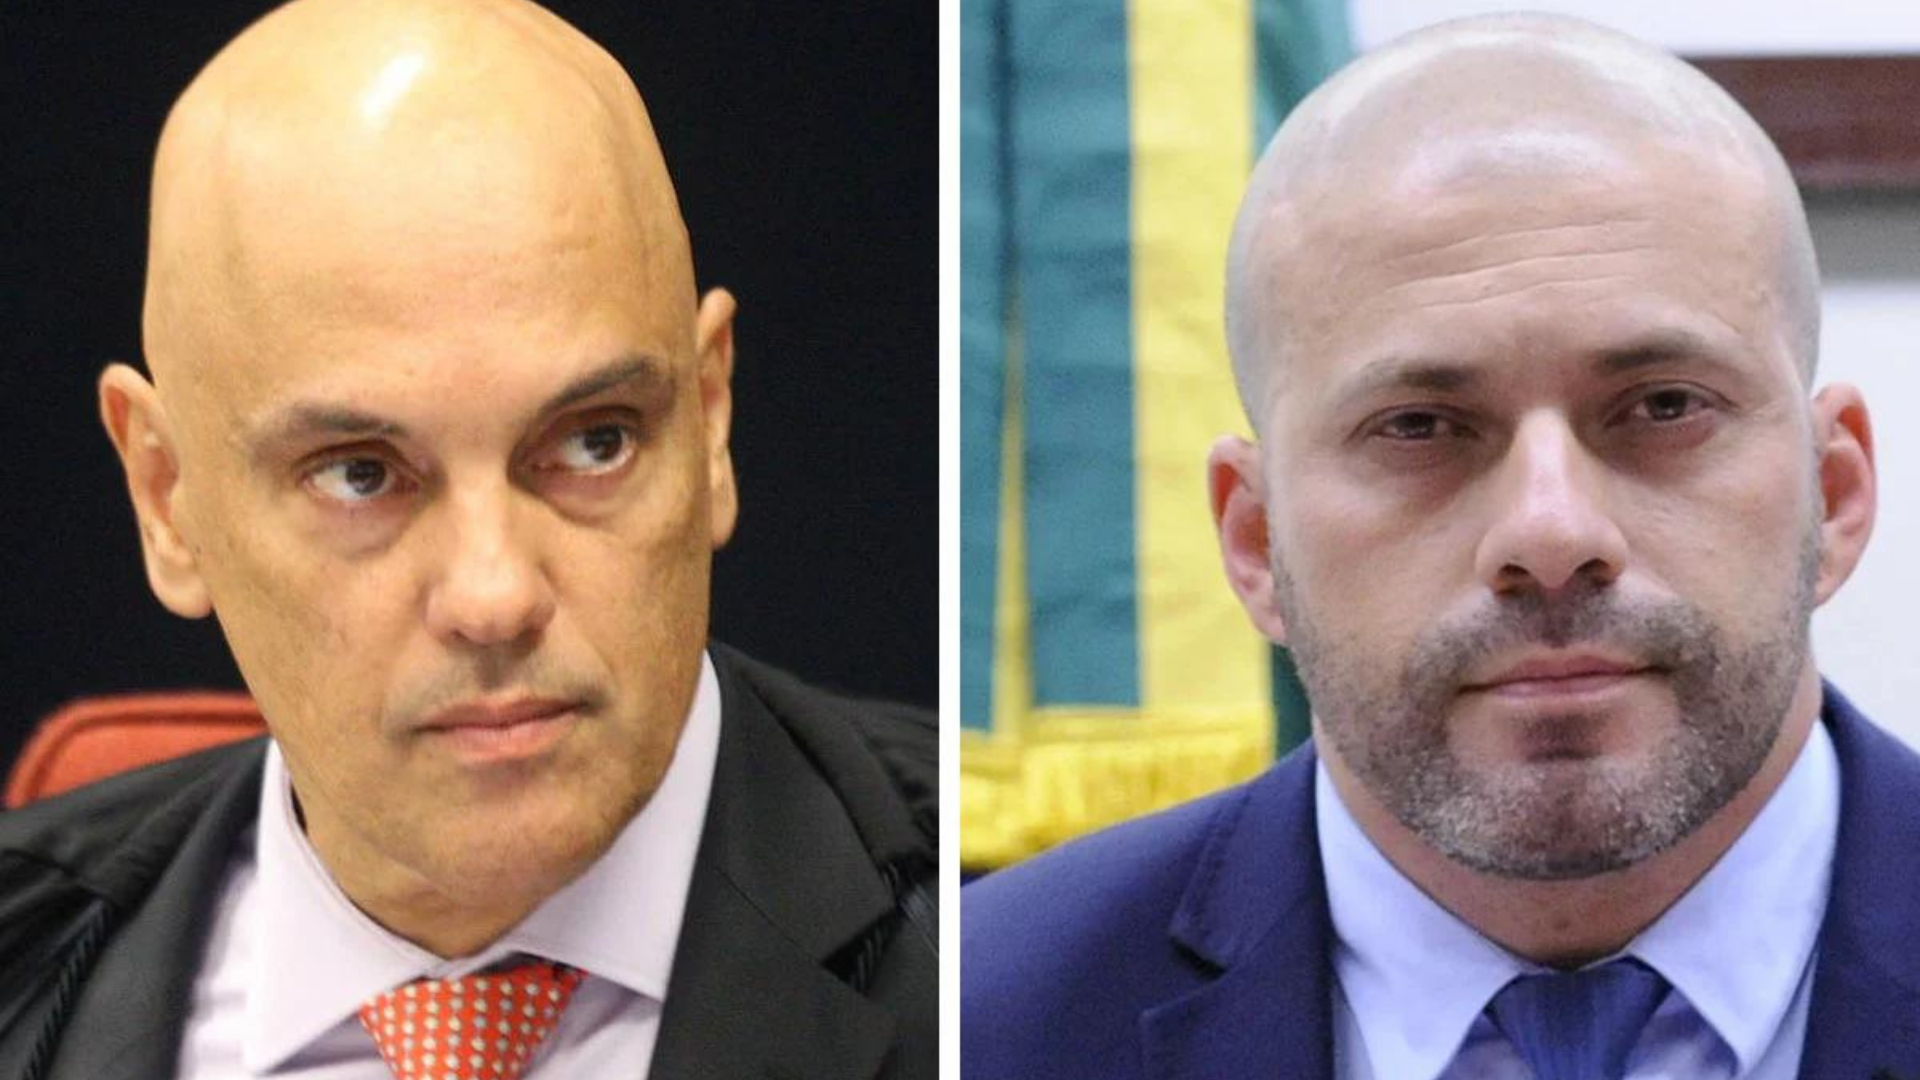 Montagem. Foto do ministro Alexandre de Moraes, à esquerda, e do deputado Daniel Silveira, à direita.